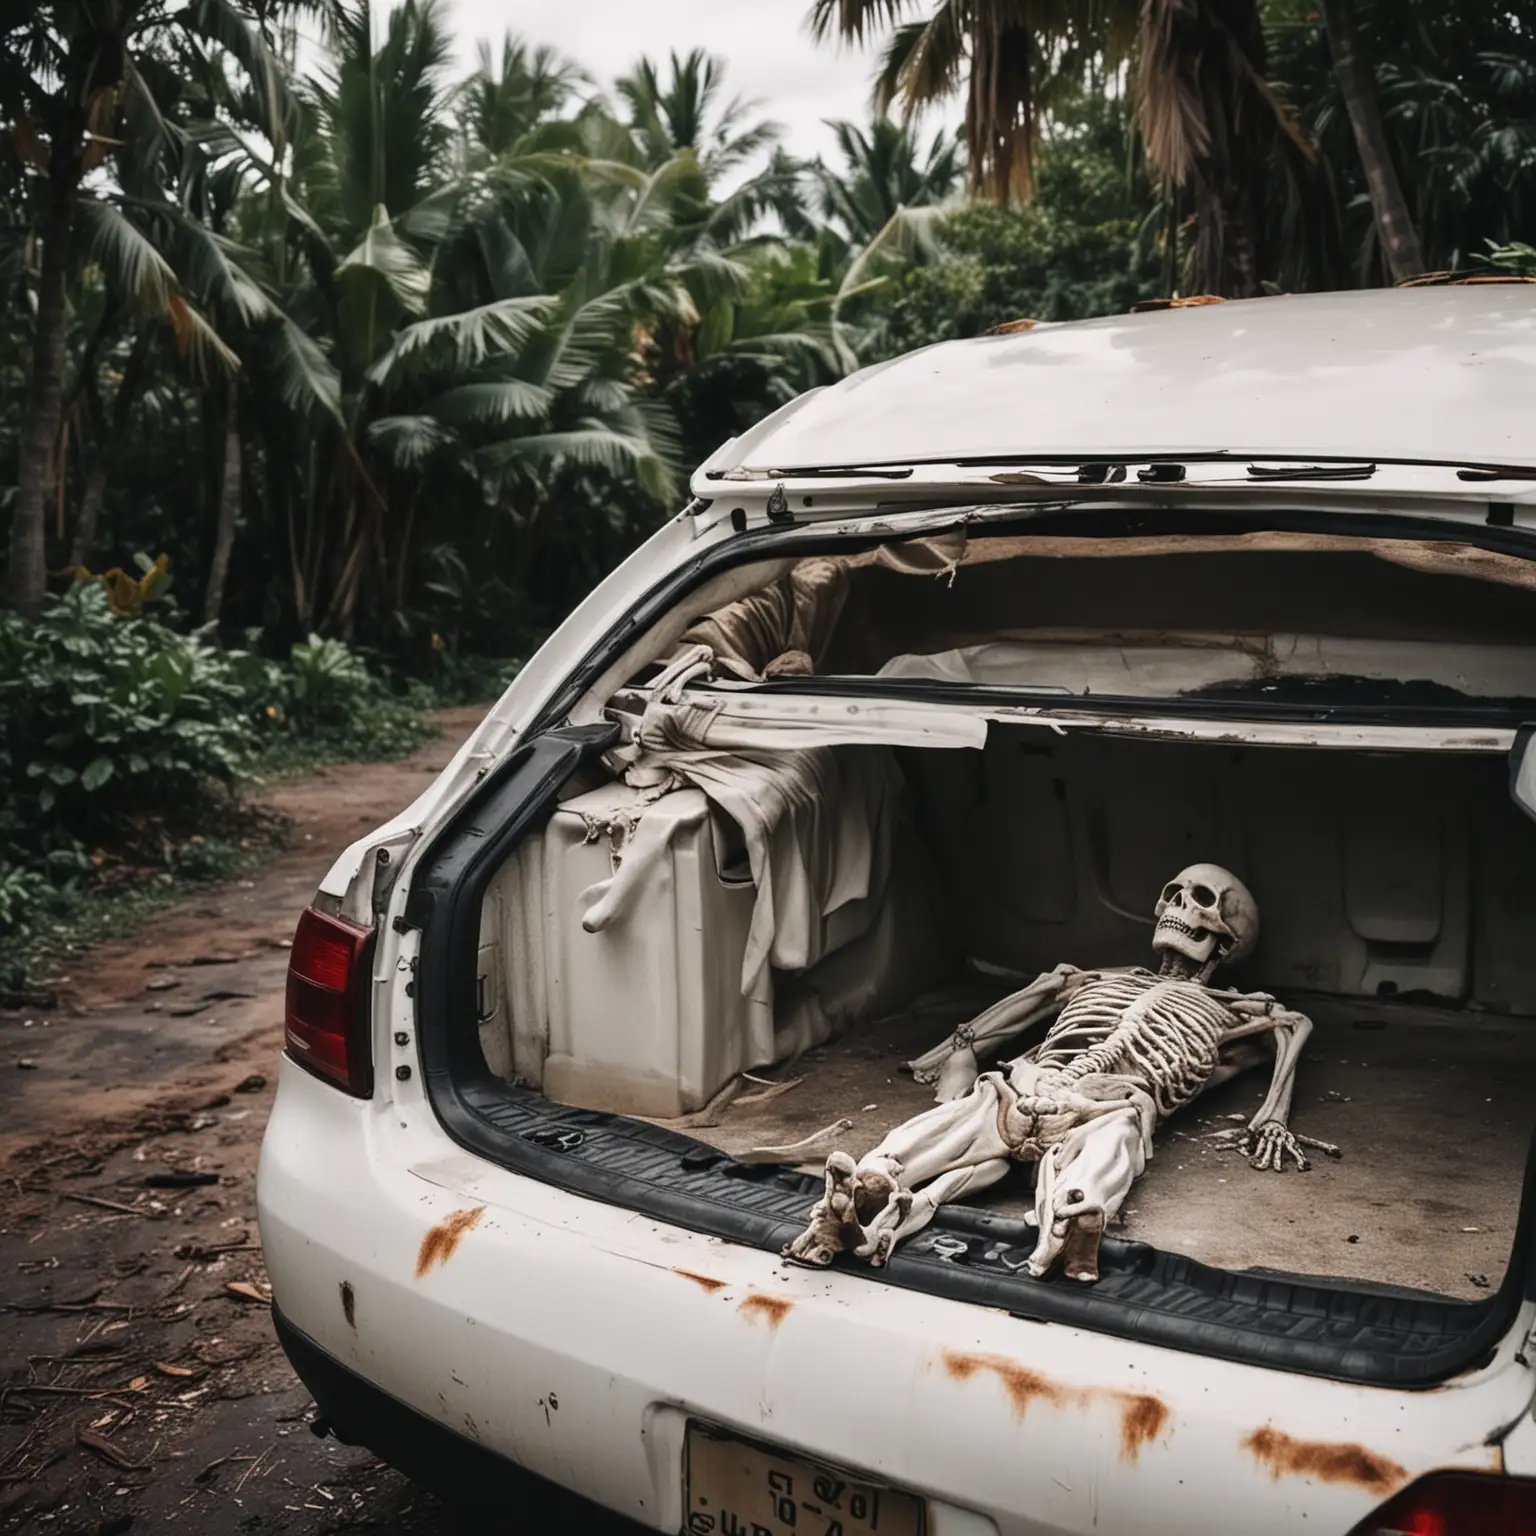 ambiance glauque tropical
 plan proche coffre ouvert de voiture blanche, avec un corps d'homme mort allongé dans le coffre 